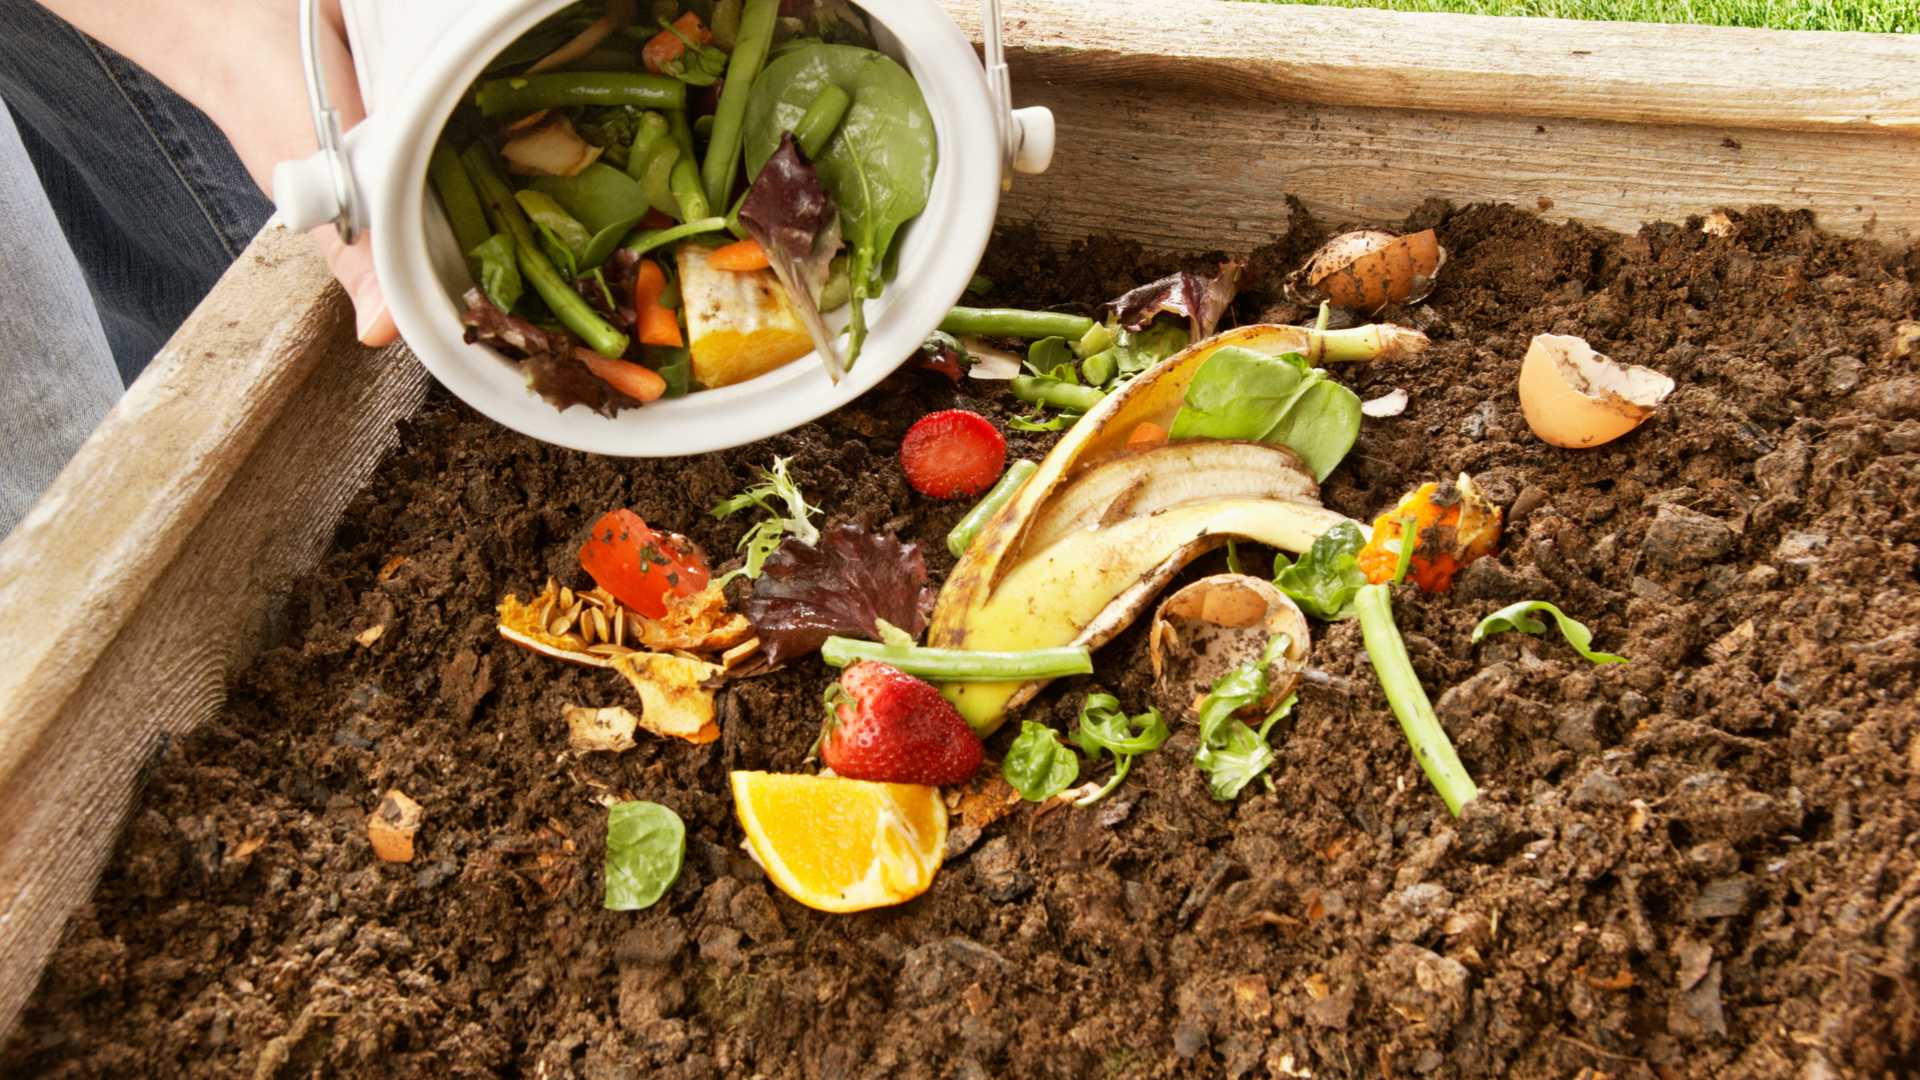 Get Composting